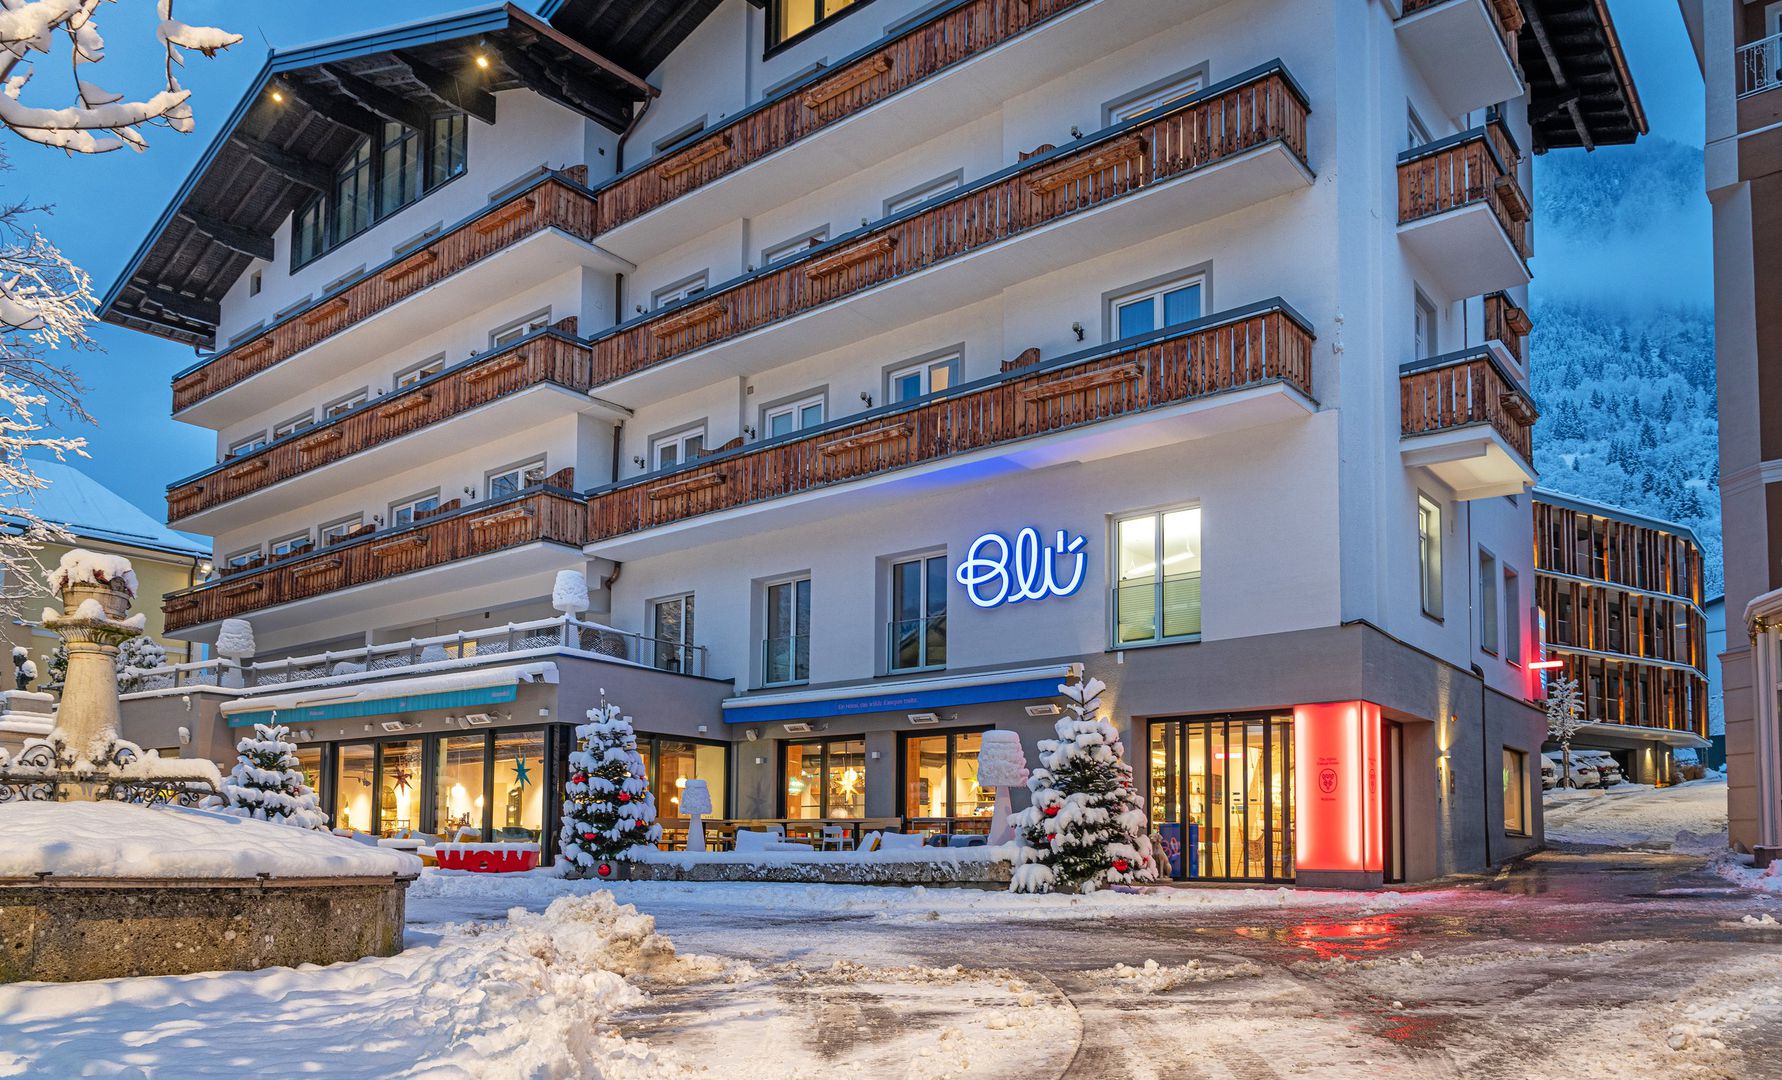 Det komfortable Hotel Blü - bin so frei ligger midt i gågaden i Bad Hofgastein med caféer og restauranter. En skibus holder umiddelbart i nærheden af hotellet (ca. 20 m) og bringer gæsterne til Schlossalm-banen (ca. 1 km fra indkvarteringen). Indstigningen til langrendsløjpen ligger ca. 450 m fra indkvarteringen. Faciliteter Indkvarteringen består af et hovedhus og en tilbygget sidebygning "Baumhaus" (bygget i sommeren 2020), der er forbundet med hinanden underjordisk. Indkvarteringen har reception, elevator, Wi-Fi, morgenmadsrum, restaurant, bar, bibliotek og skikælder. Derudover har hotellet en ladestation til e-biler og parkeringspladser mod betaling (hvis ledig). I nærheden af hotellet er der desuden gratis parkeringspladser (hvis ledig). Det ca. 500 m² store "Himmelblü Sp" ligger på 5.sal, over tagene i Bad Hofgastein og byder med finsk sauna, økosauna, panorama-hvilerum samt panoramaterrasse, taghave og stort yoga-rum (for åbningstider, se opslag på indkvarteringen). Derudover får man "Gastein Card", som giver mange rabatter som fx nedsat entré til "Alpentherme Bad Hofgastein" (se info på destinationen). Forplejning 1/2 pensionen, der allerede er inkluderet i prisen, består af righoldig, regional morgenmadsbuffet samt 3 retter fra hotellets à-la-carte-menukort (fra kl. 11 - 17, tidspunktet kan vælges frit eller en 3-retters valgmenu (Blü Taste Menu, fra kl. 17). En bestilling à-la-carte efter kl. 17 er mulig på forespørgsel og eventuelt mod en merpris. Til jul (24-12) og nytår serveres der en gallamenu. Der er vegetariske alternativer og på forespørgsel er der mulighed for laktosefrie retter. På indkvarteringen fås der 1 x pr. person og ophold en rabatkupon til en "Blü" aperitif fra "Blükarte" (gyldig ved booking af 4 eller 5 nætter) samt 1 x pr. booking af 7 nætter en flaske "Blü" vin på værelset ved ankomsten (kan ikke overdrages, ingen kontant udbetaling, se info på indkvarteringen). For bookinger fra december 2024 er 1/2 pension inkluderet med en righoldig morgenbuffet (kl. 07.30 - 10.30) og en 3-retters valgmenu (kl. 17.00 - 20.30) om aftenen. Til jul (24-12) og nytår serveres der en gallamenu. Der er vegetariske alternativer, og på forespørgsel er der mulighed for laktosefrie retter. Der fås en flaske Blü-vin på værelset ved ankomsten én gang pr. booking med 5 eller 7 nætter (kan ikke overdrages, ingen kontant udbetaling, se information på stedet).